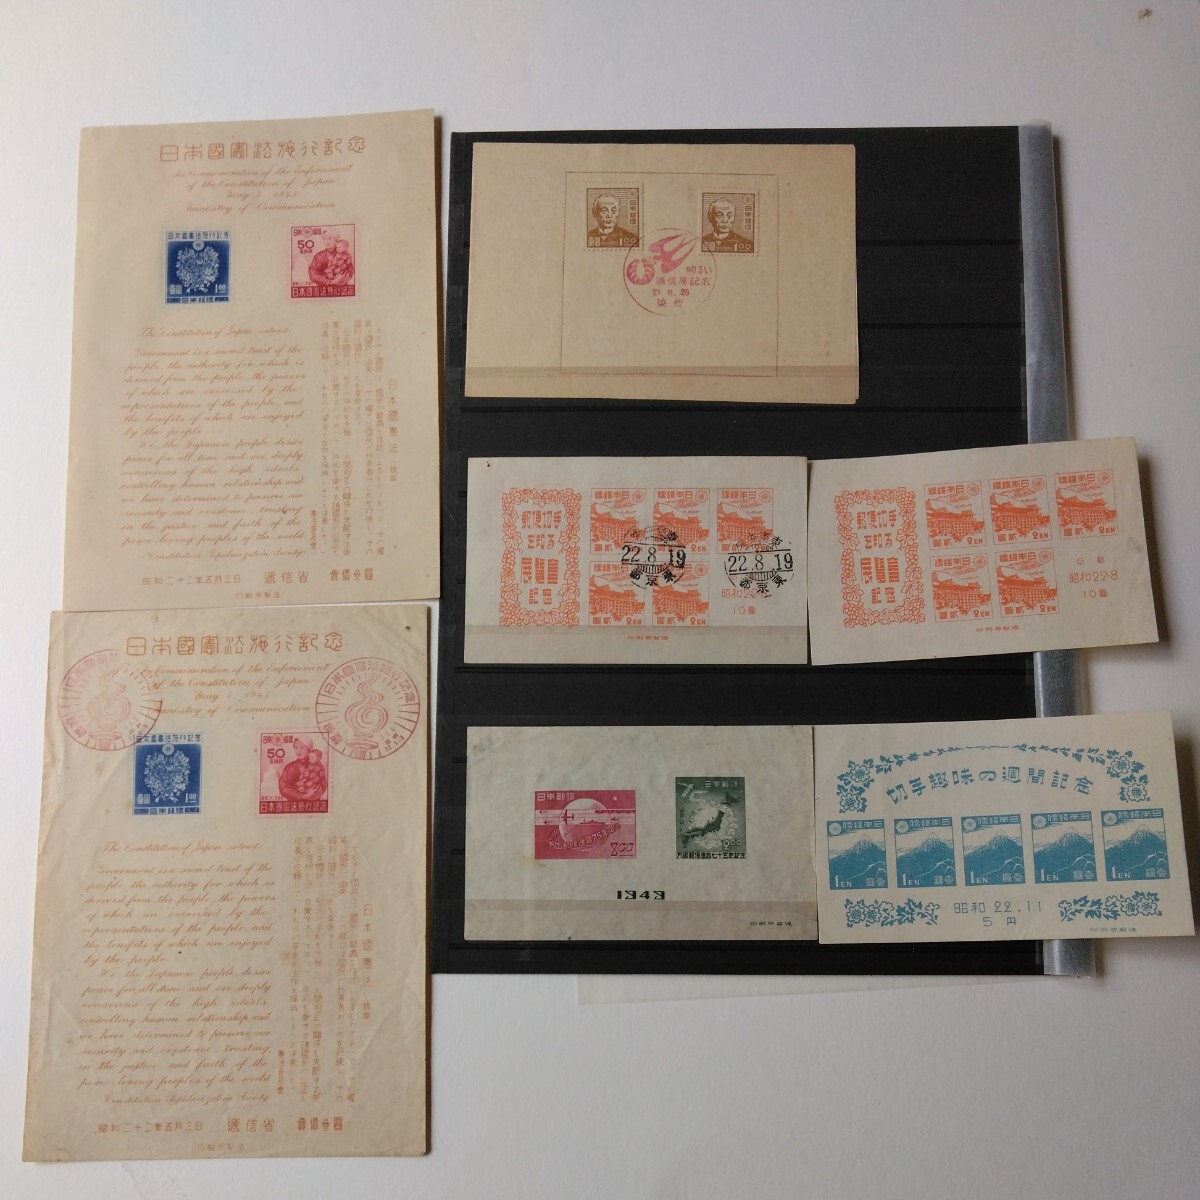 日本国憲法施行記念切手シート2枚と郵便切手を知る展覧会記念シート2枚切手趣味の週間記念シートとUPU75年シート明るい逓信展記念切手ですの画像1